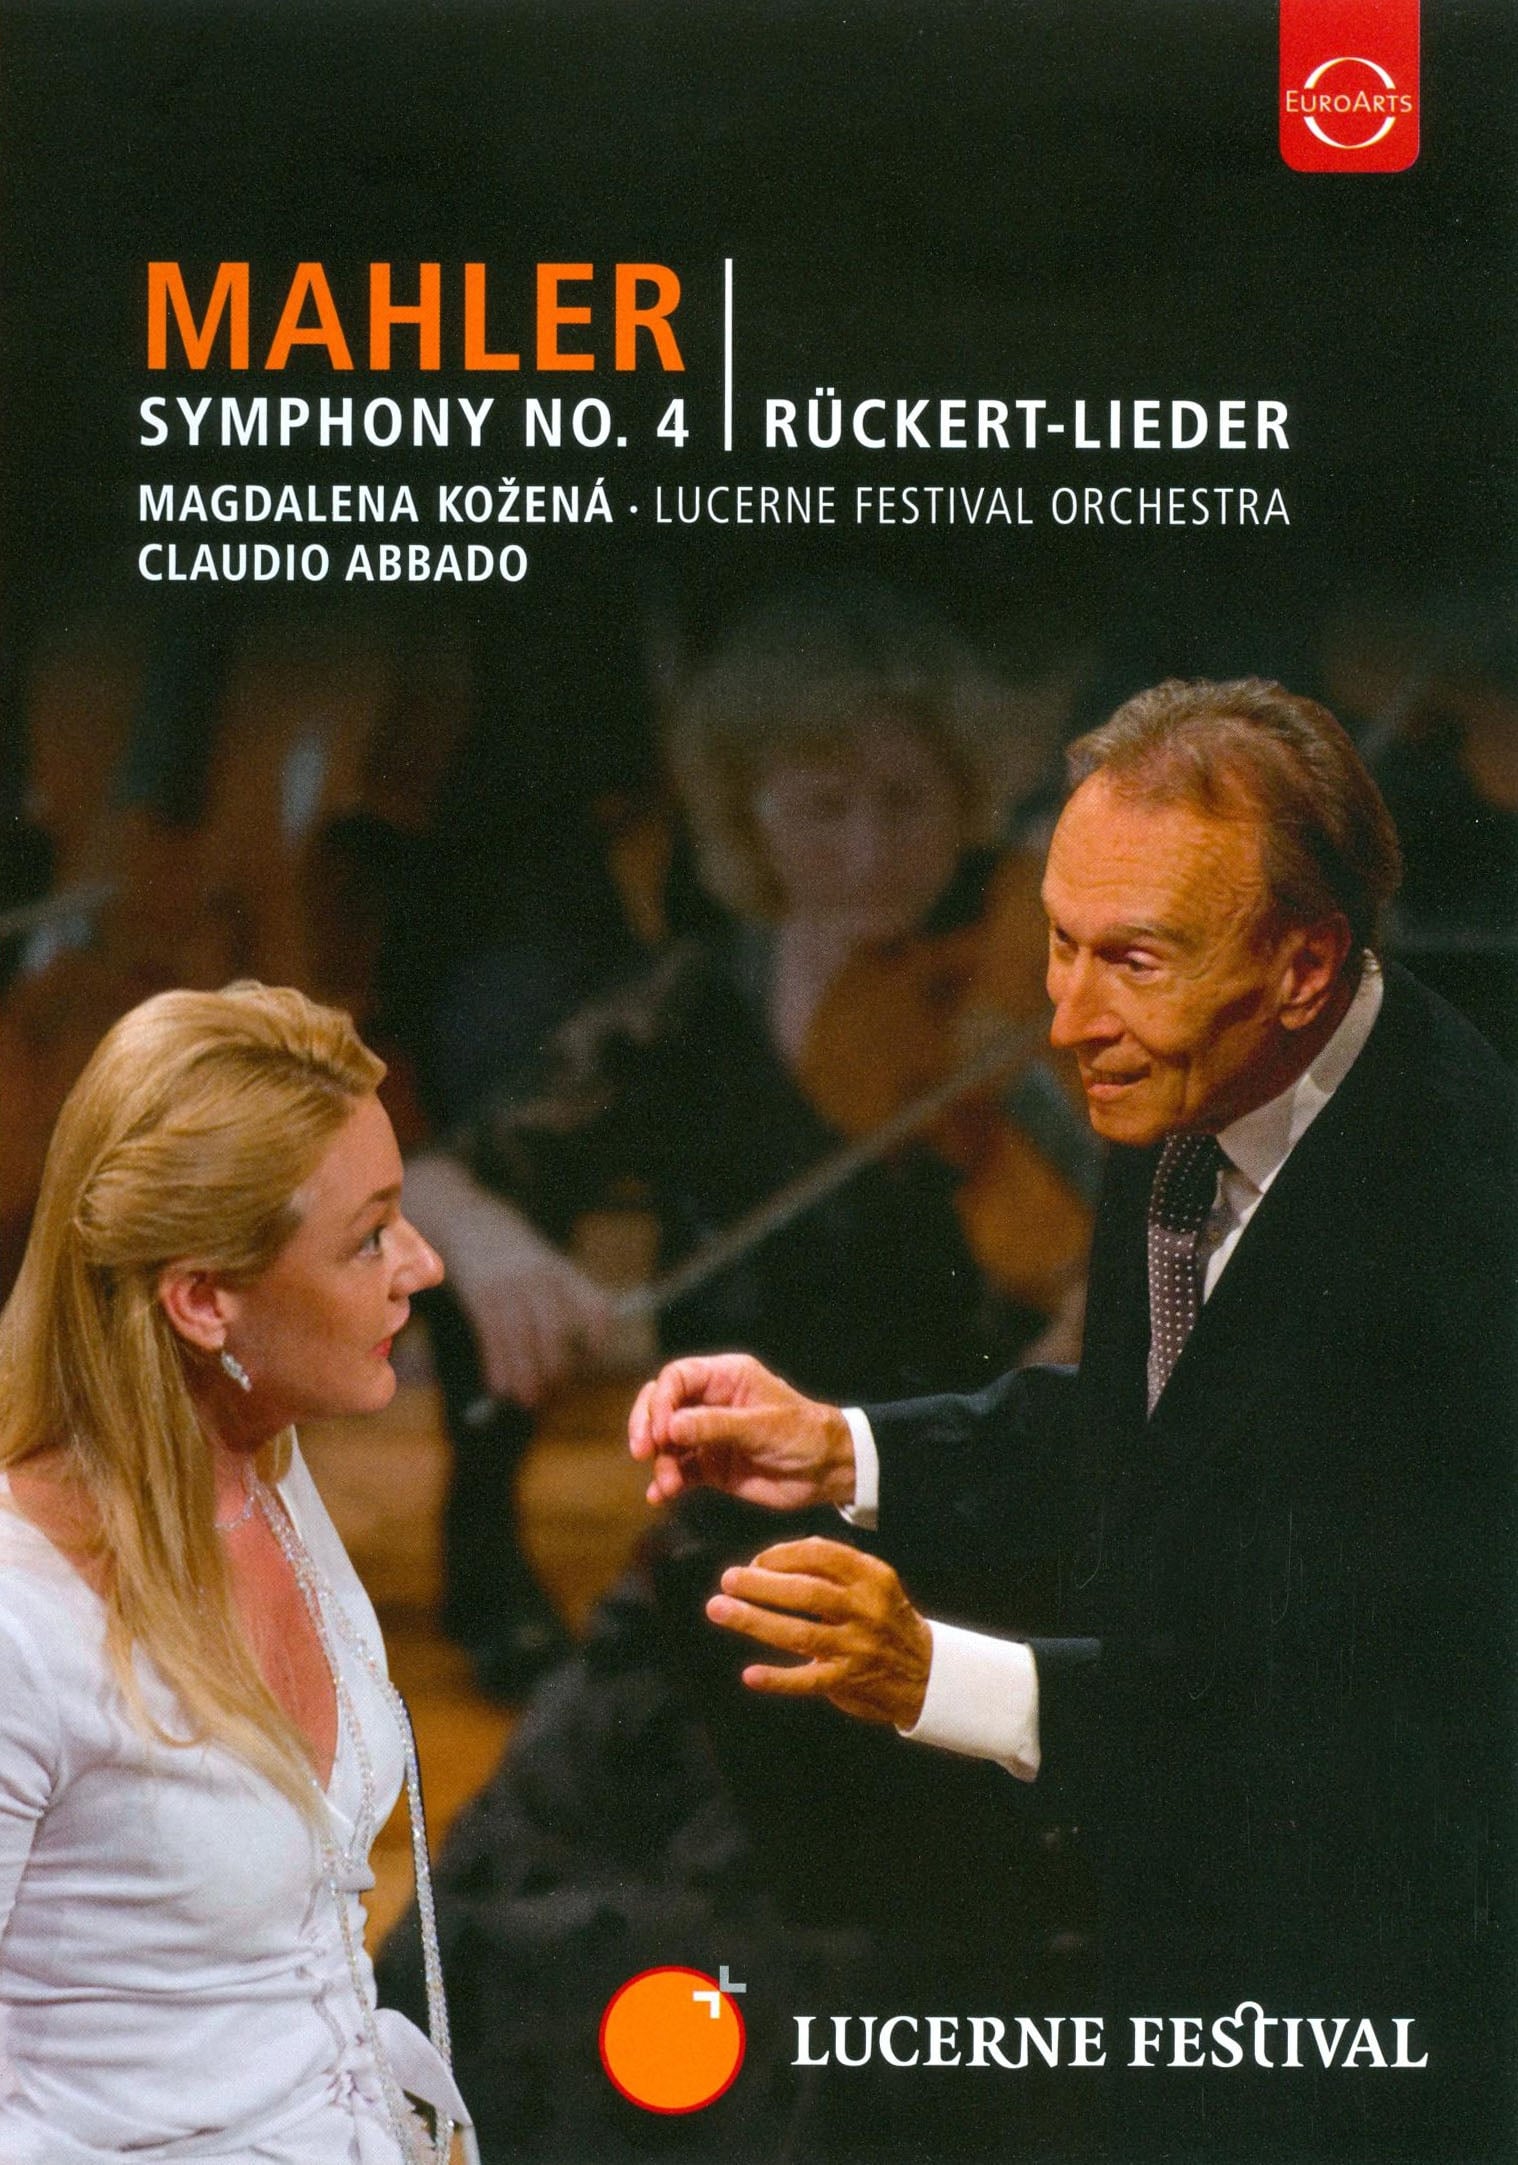 Mahler Symphony No.4 - Lucerne Festival Orchestra - Claudio Abbado